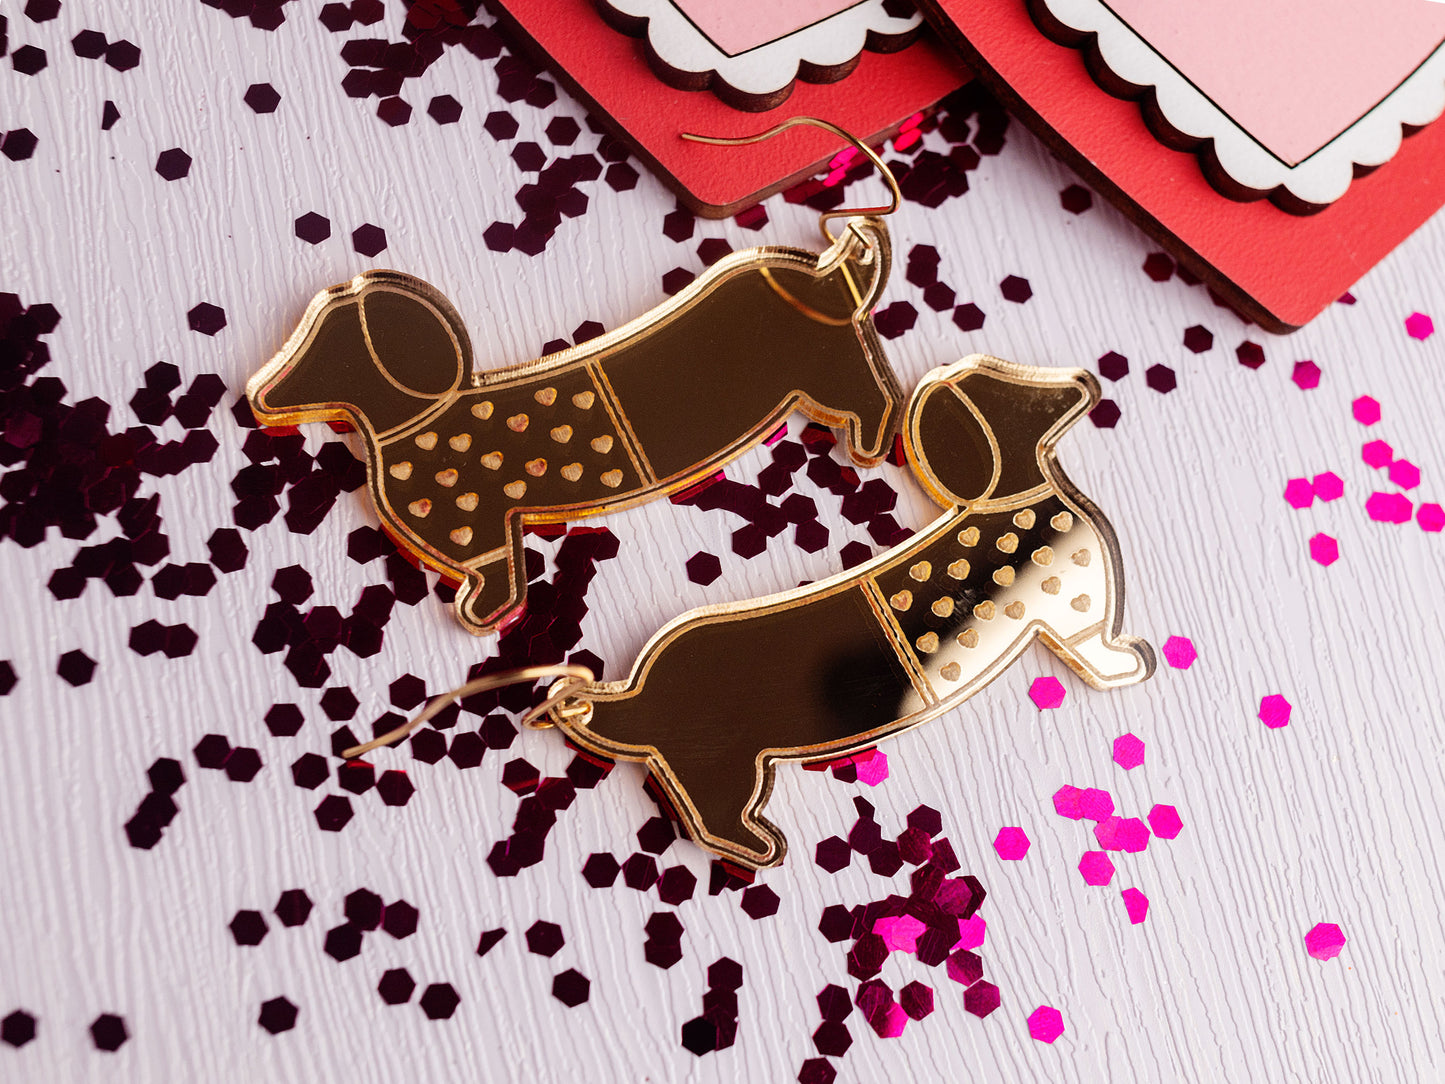 Weiner Dog Earrings - Valentine Earrings - Dog Earrings - Mirror Acrylic Earrings - Gold